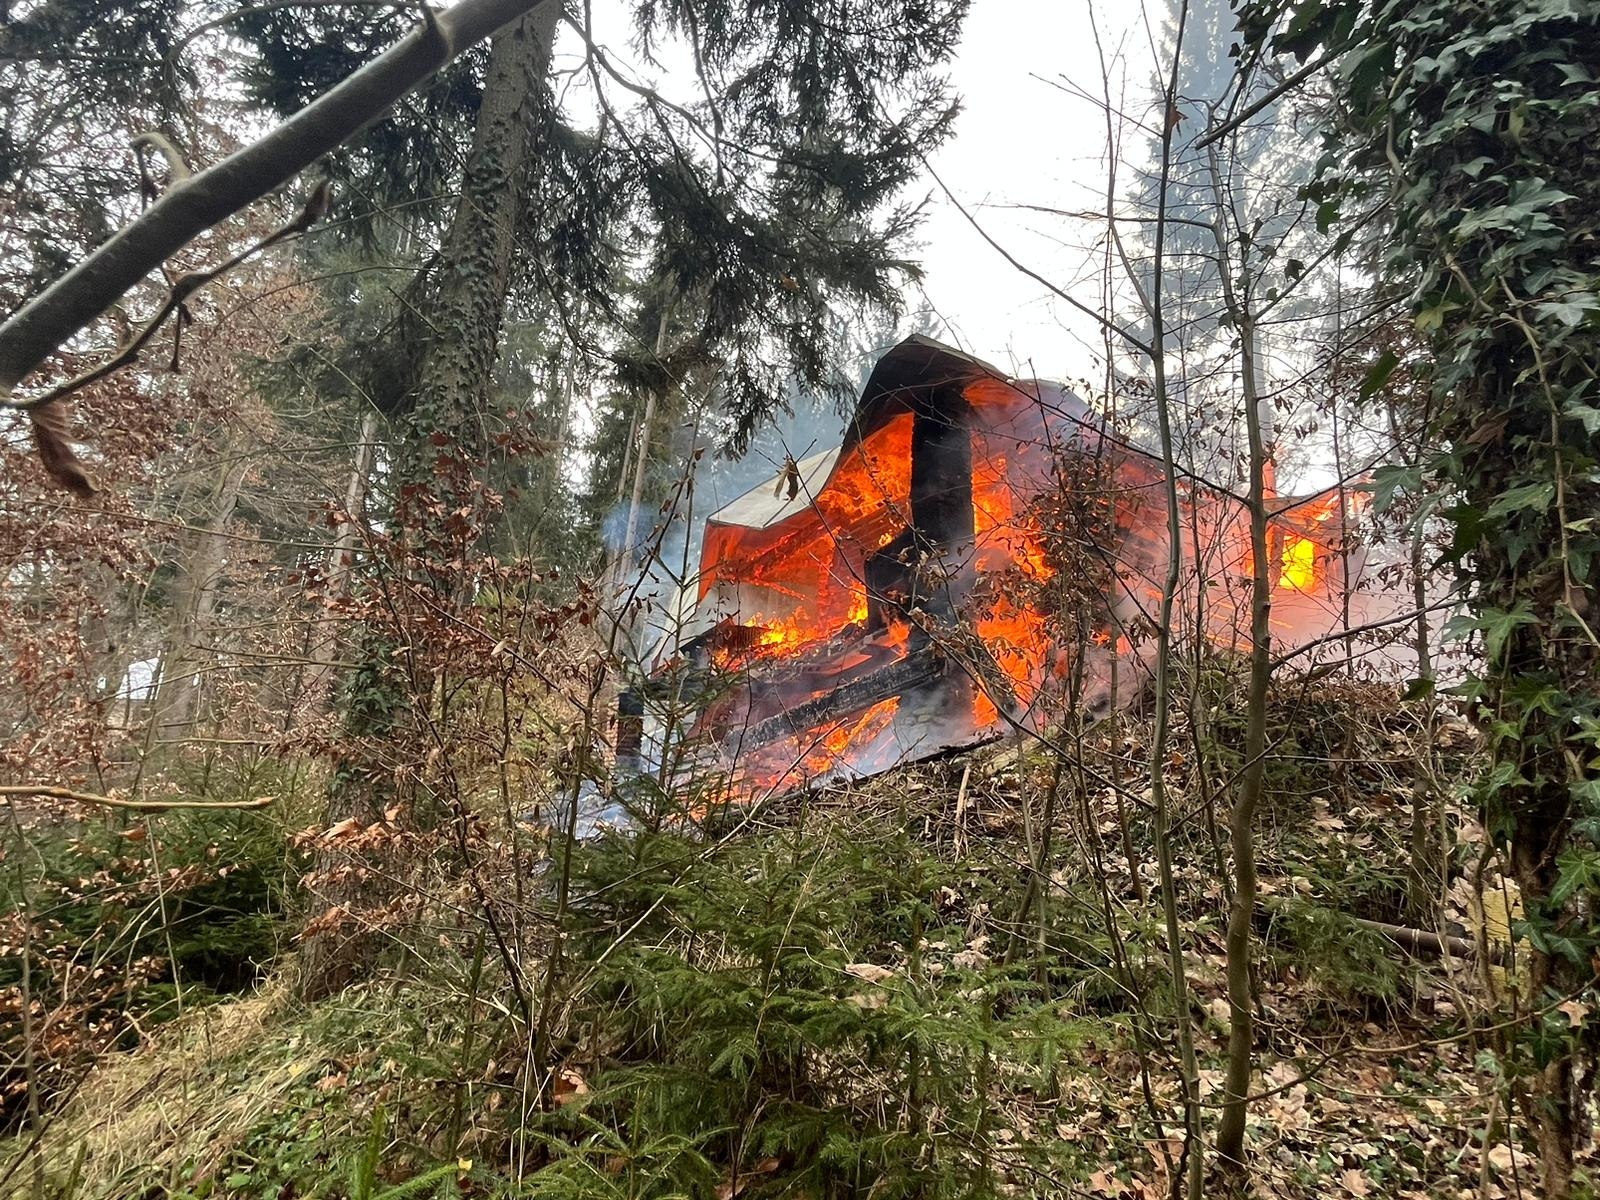 006-Požár roubené chaty v rekreační oblasti u obce Psáry nedaleko Prahy.jpg